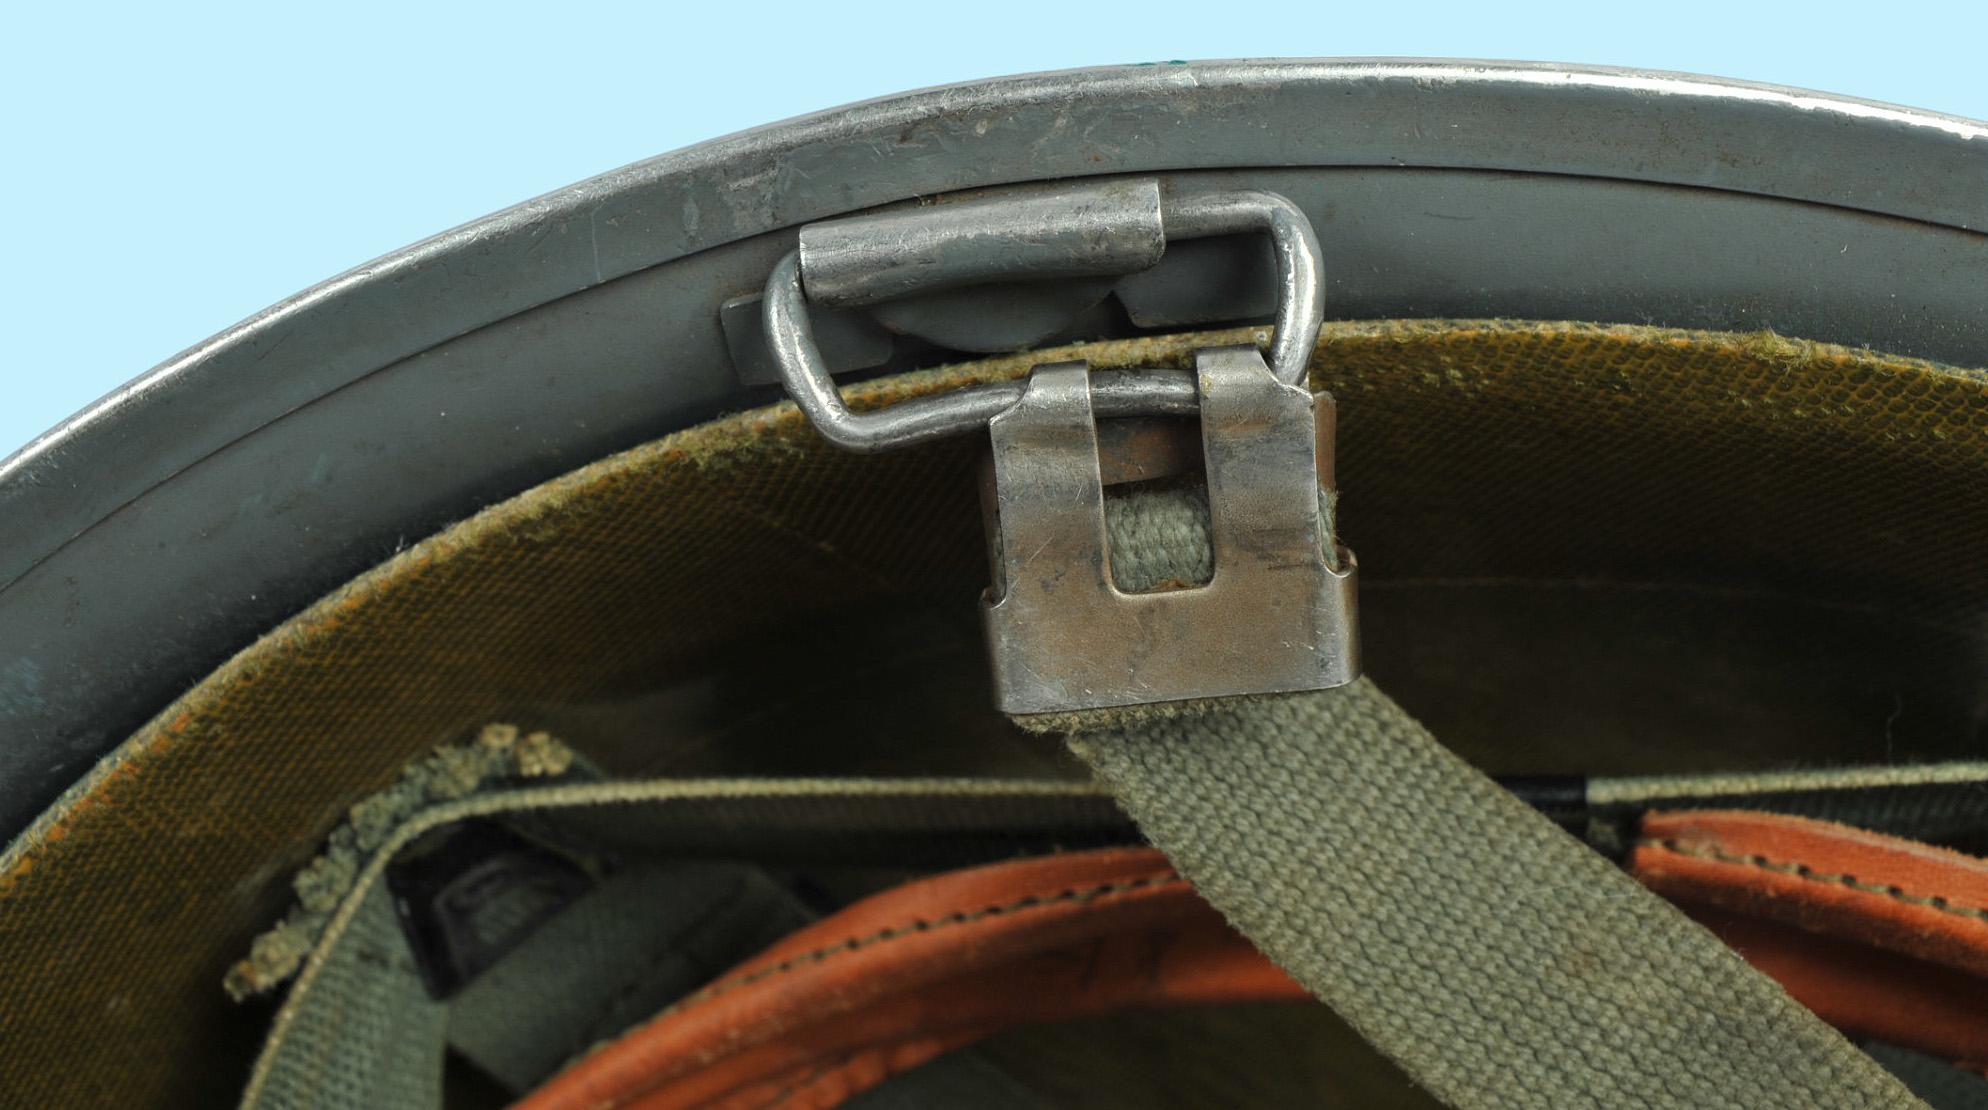 Belgian Army Post-WWII M1 Helmet & Liner (K1S)